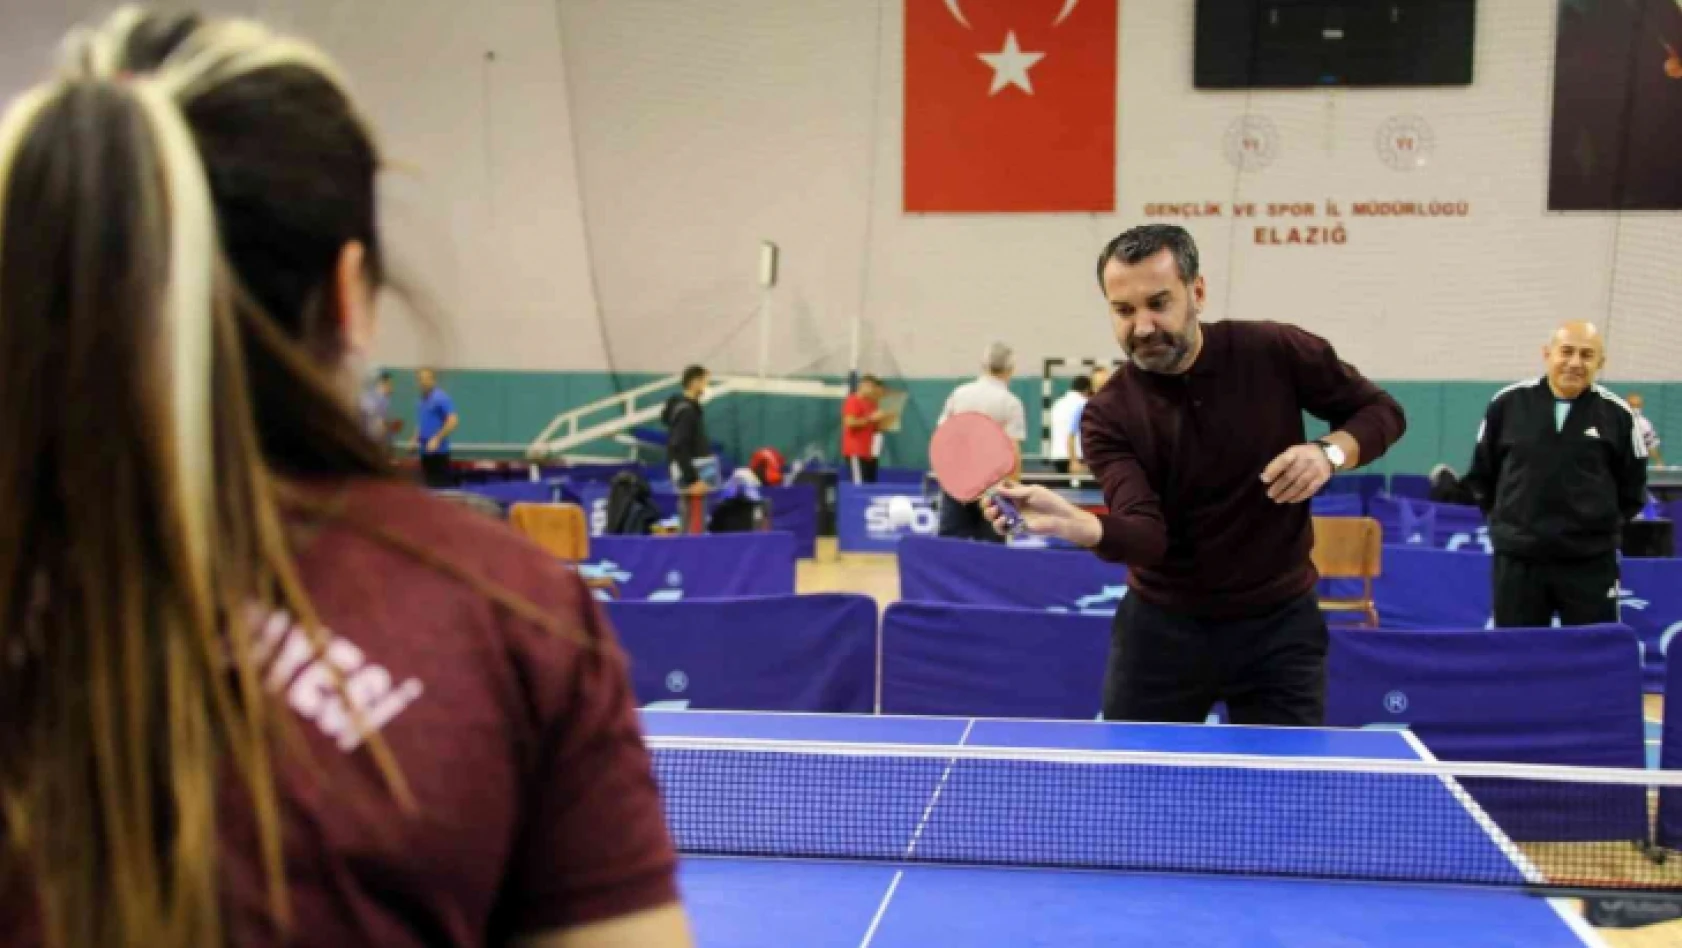 Elazığ Belediyesi masa tenisi turnuvasında sona gelindi